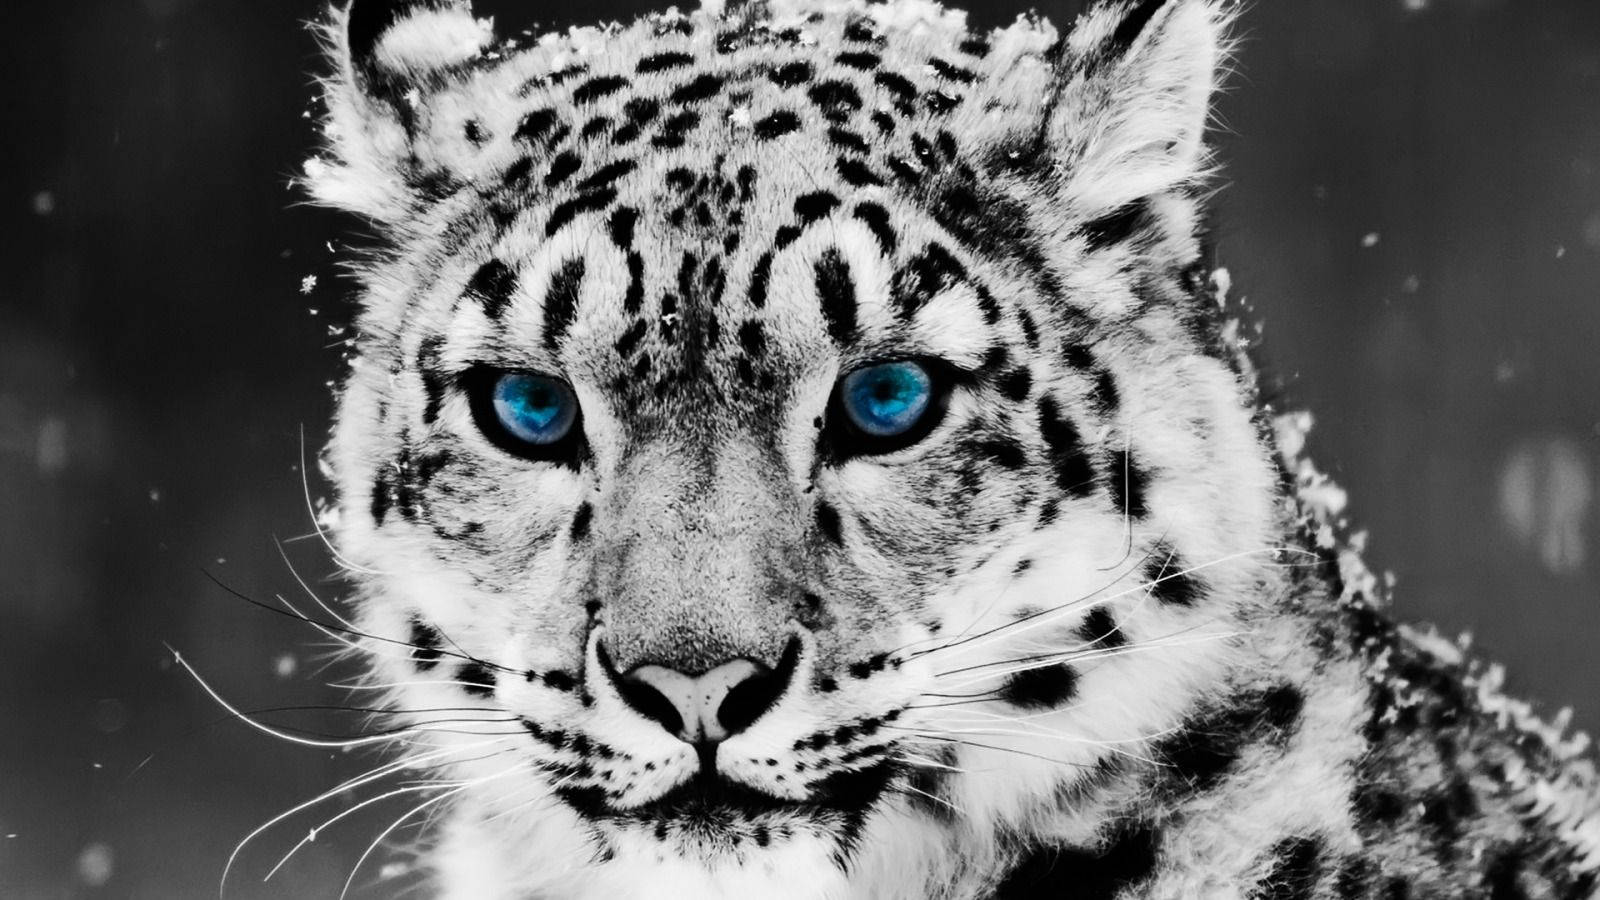 Se cool ud som en sneleopard med blå øjne. Wallpaper